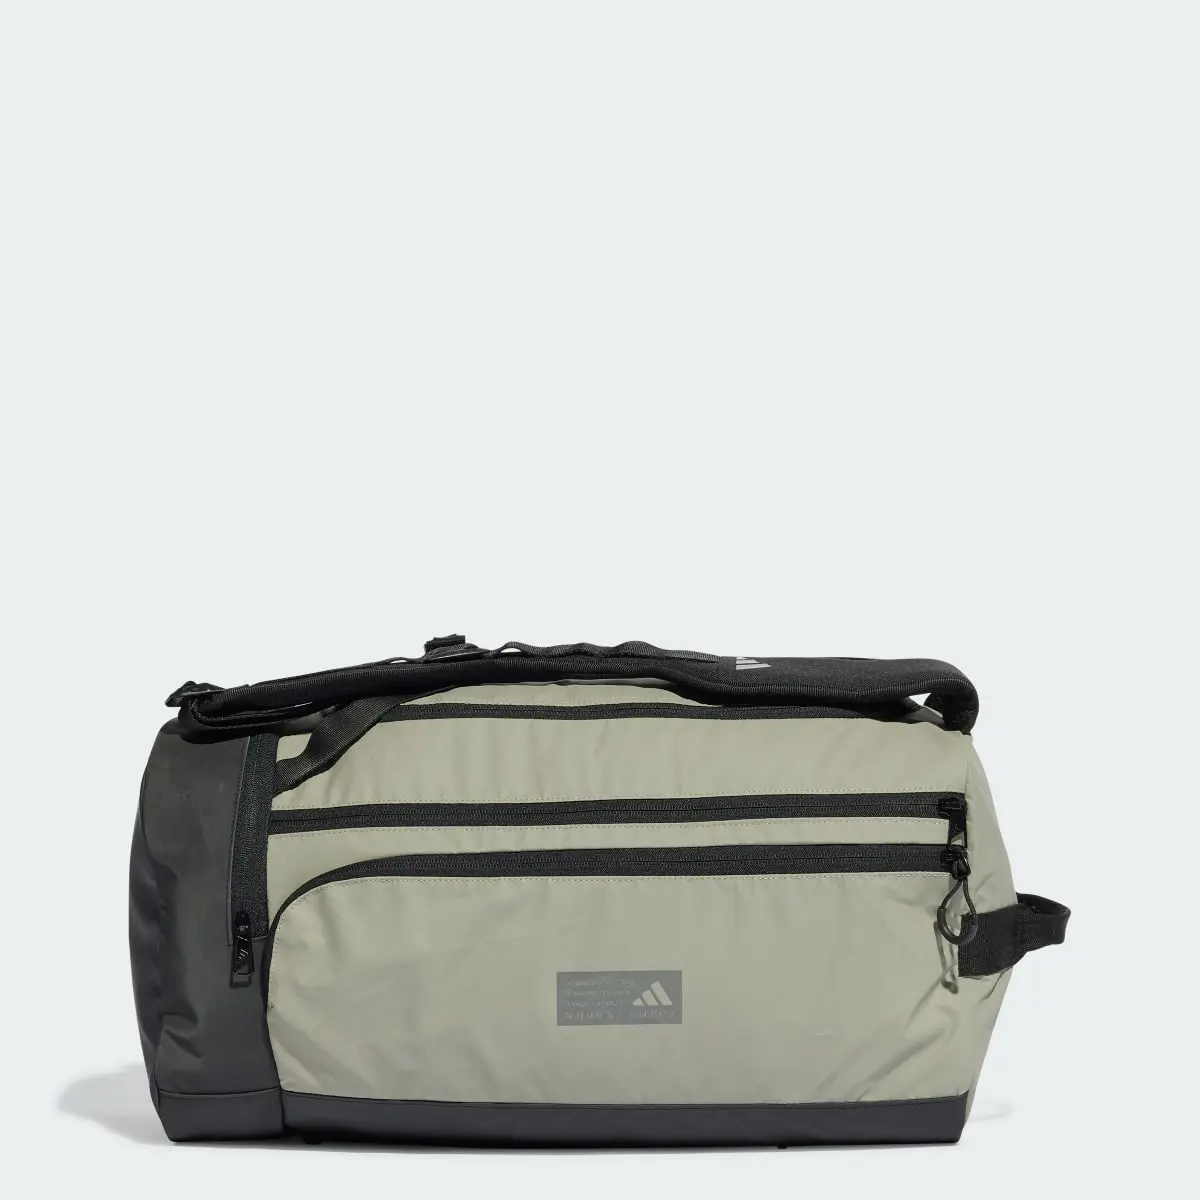 Adidas Hybrid Duffel Bag. 1